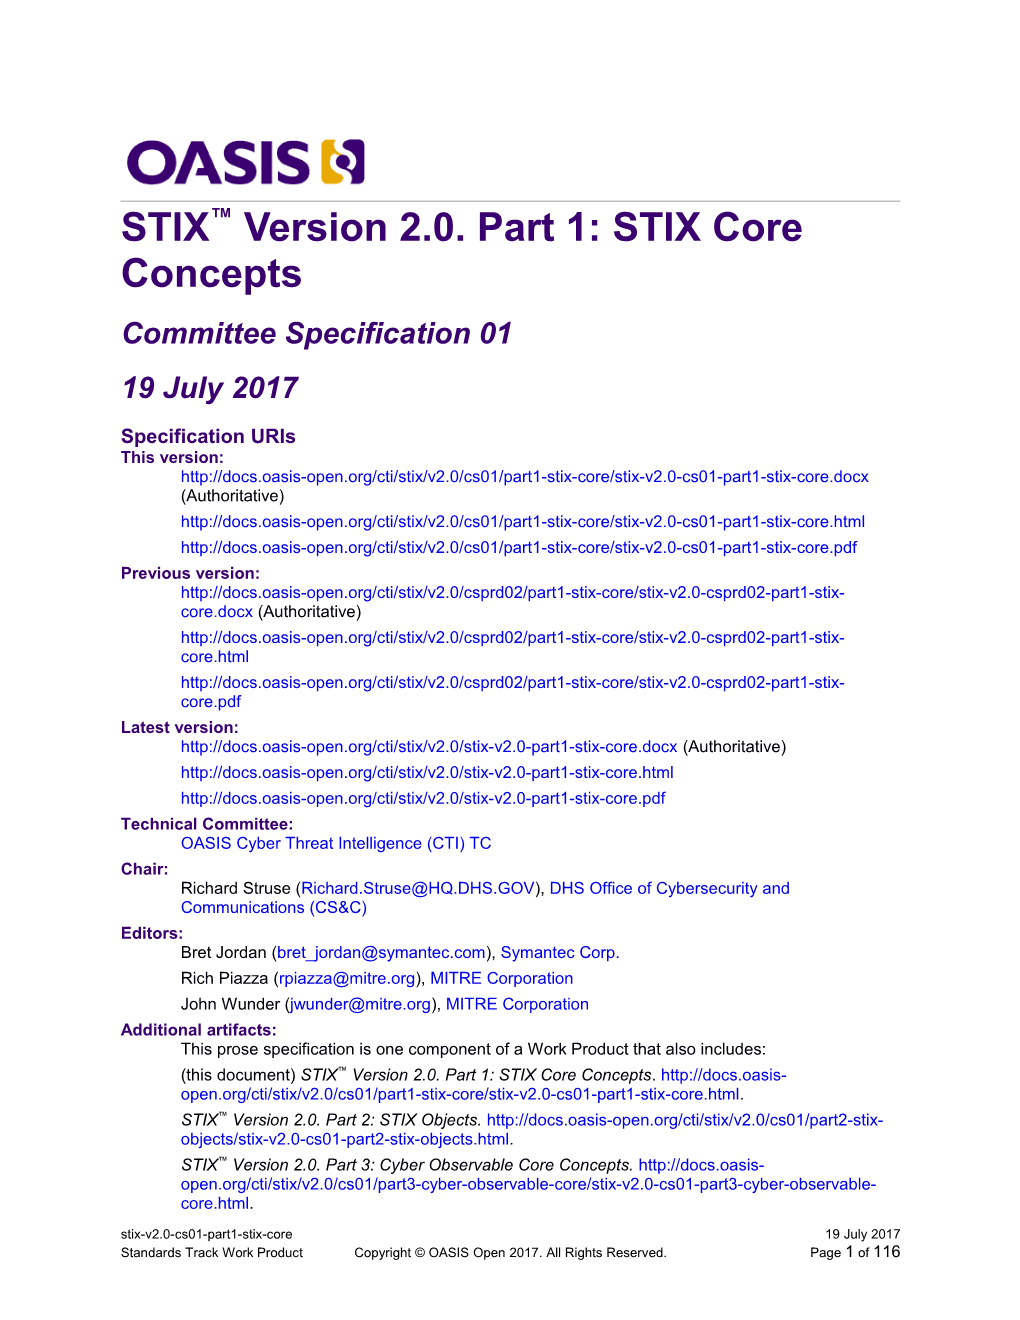 STIX Version 2.0. Part 1: STIX Core Concepts